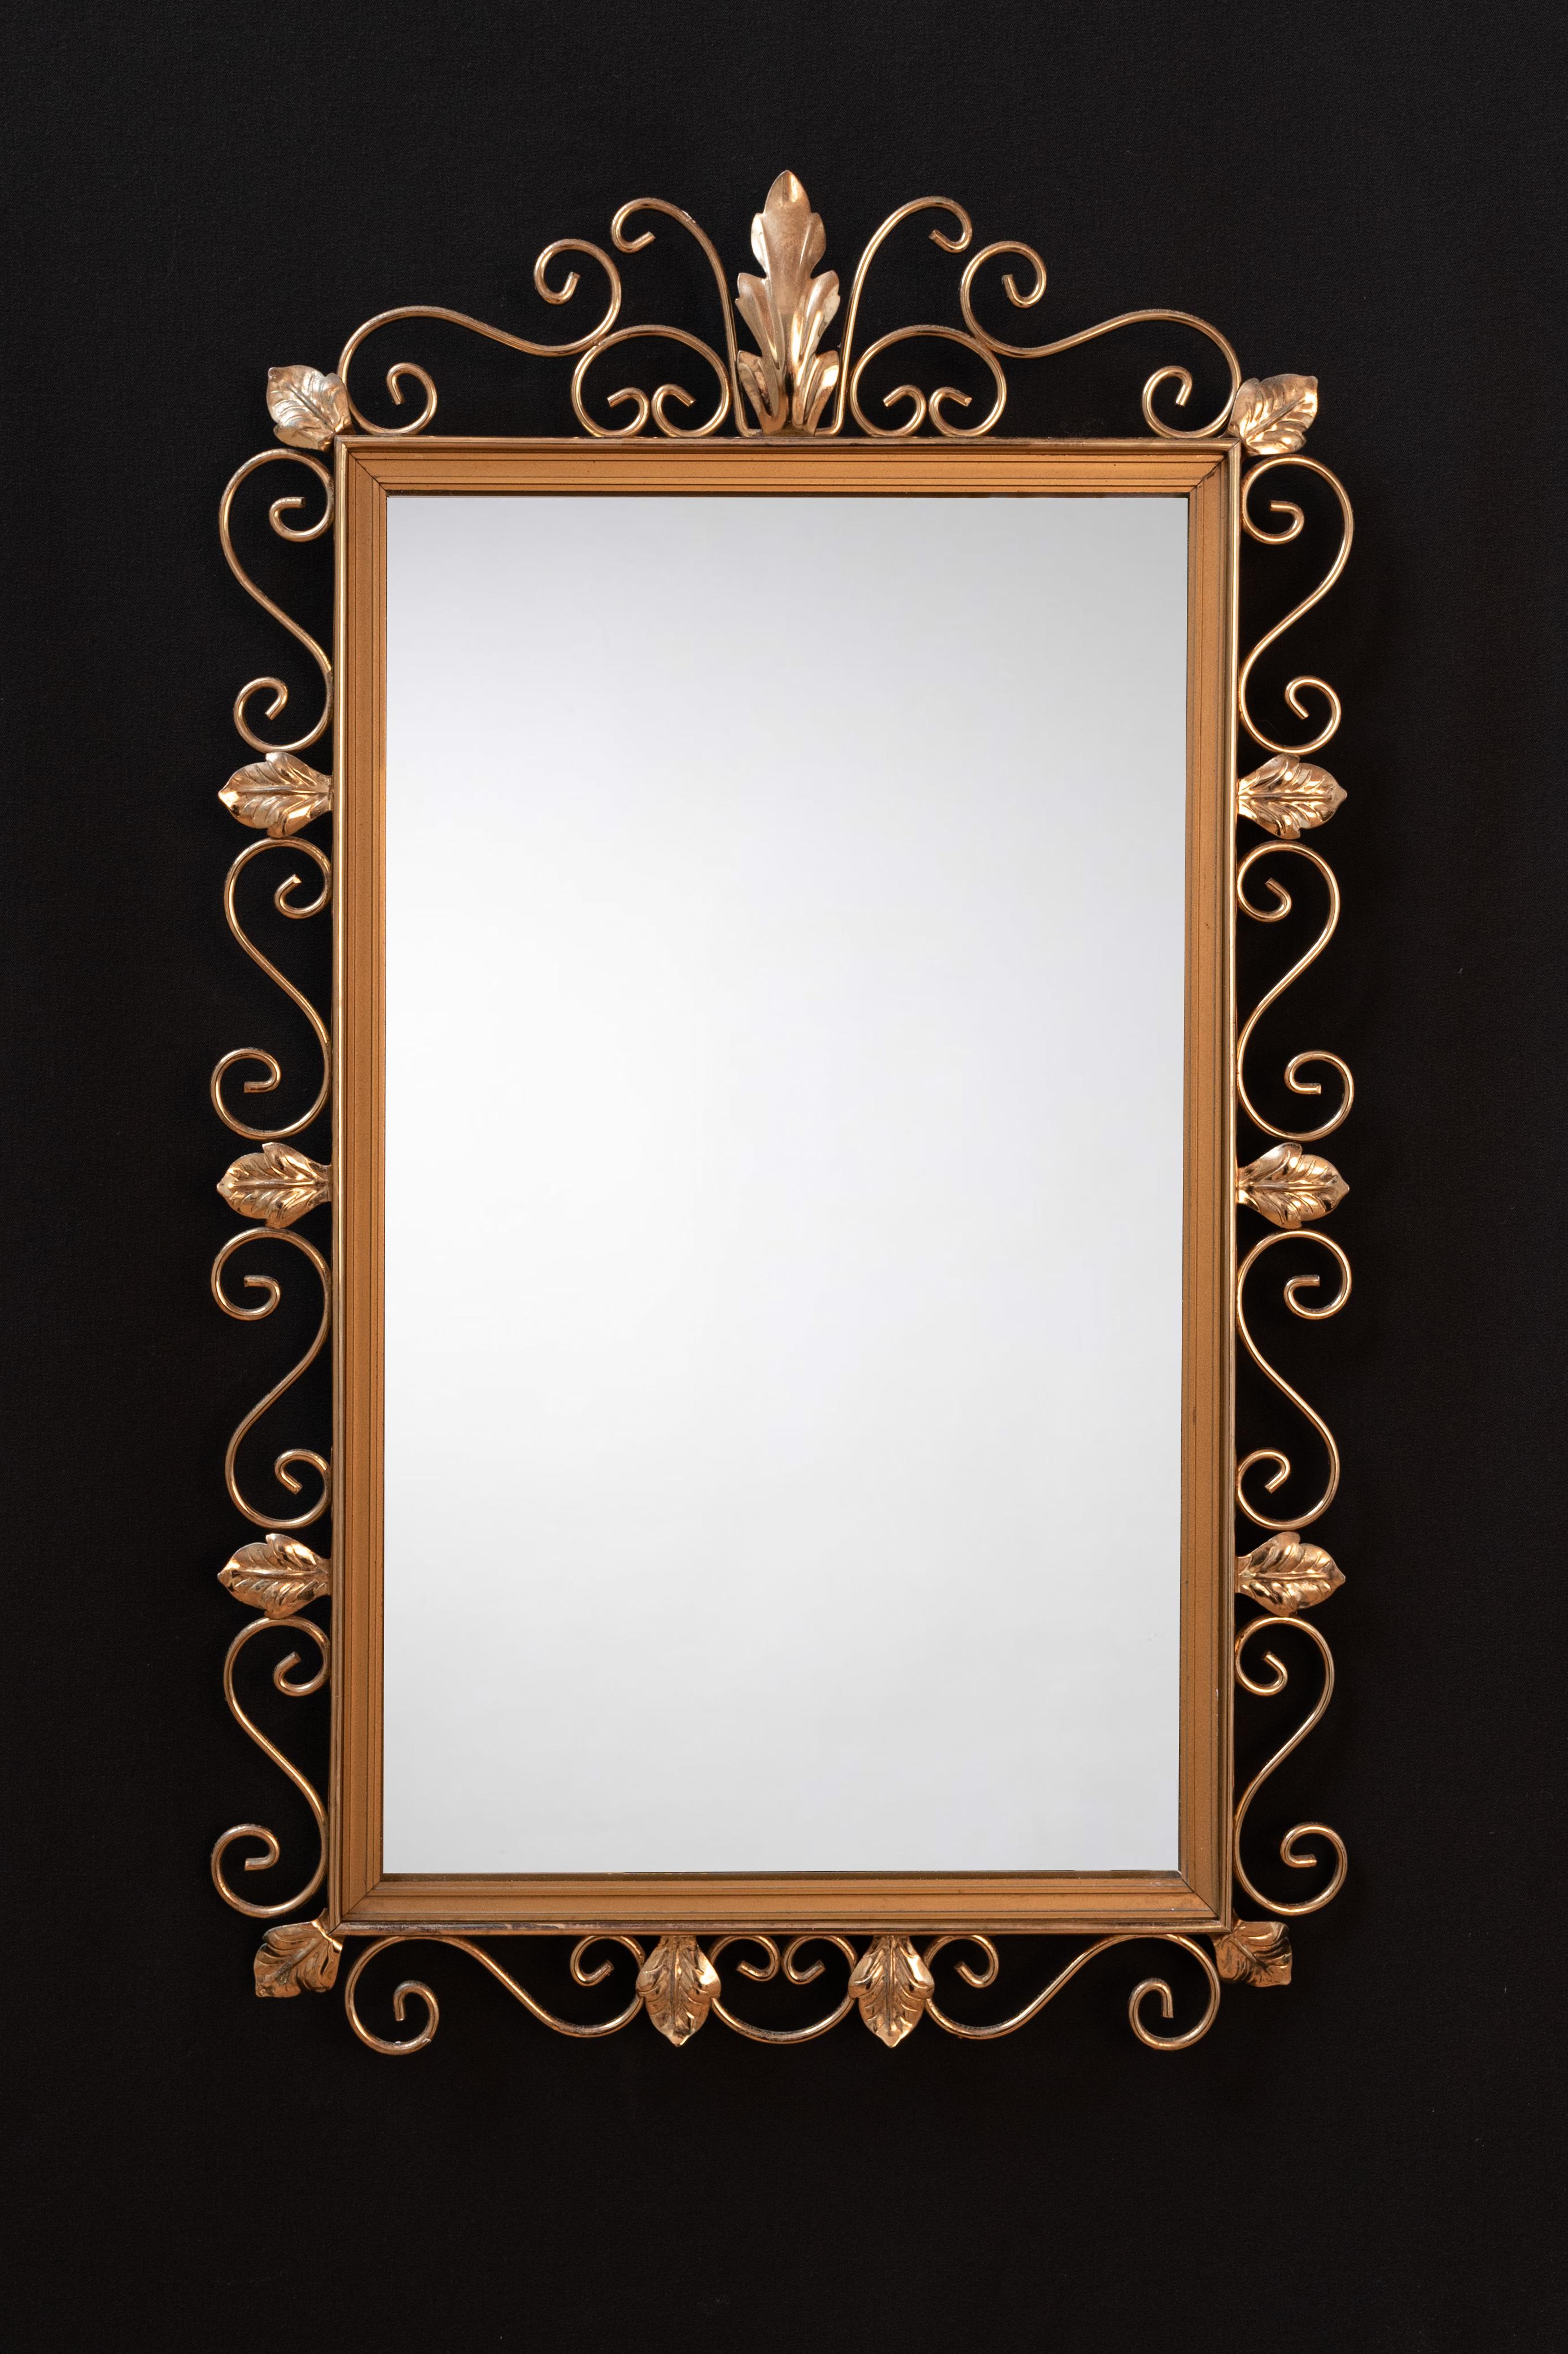 Miroir très décoratif avec des feuilles dorées sur tout le pourtour. 

Le miroir est en excellent état et possède encore l'autocollant d'origine au dos (numéro de référence du modèle).